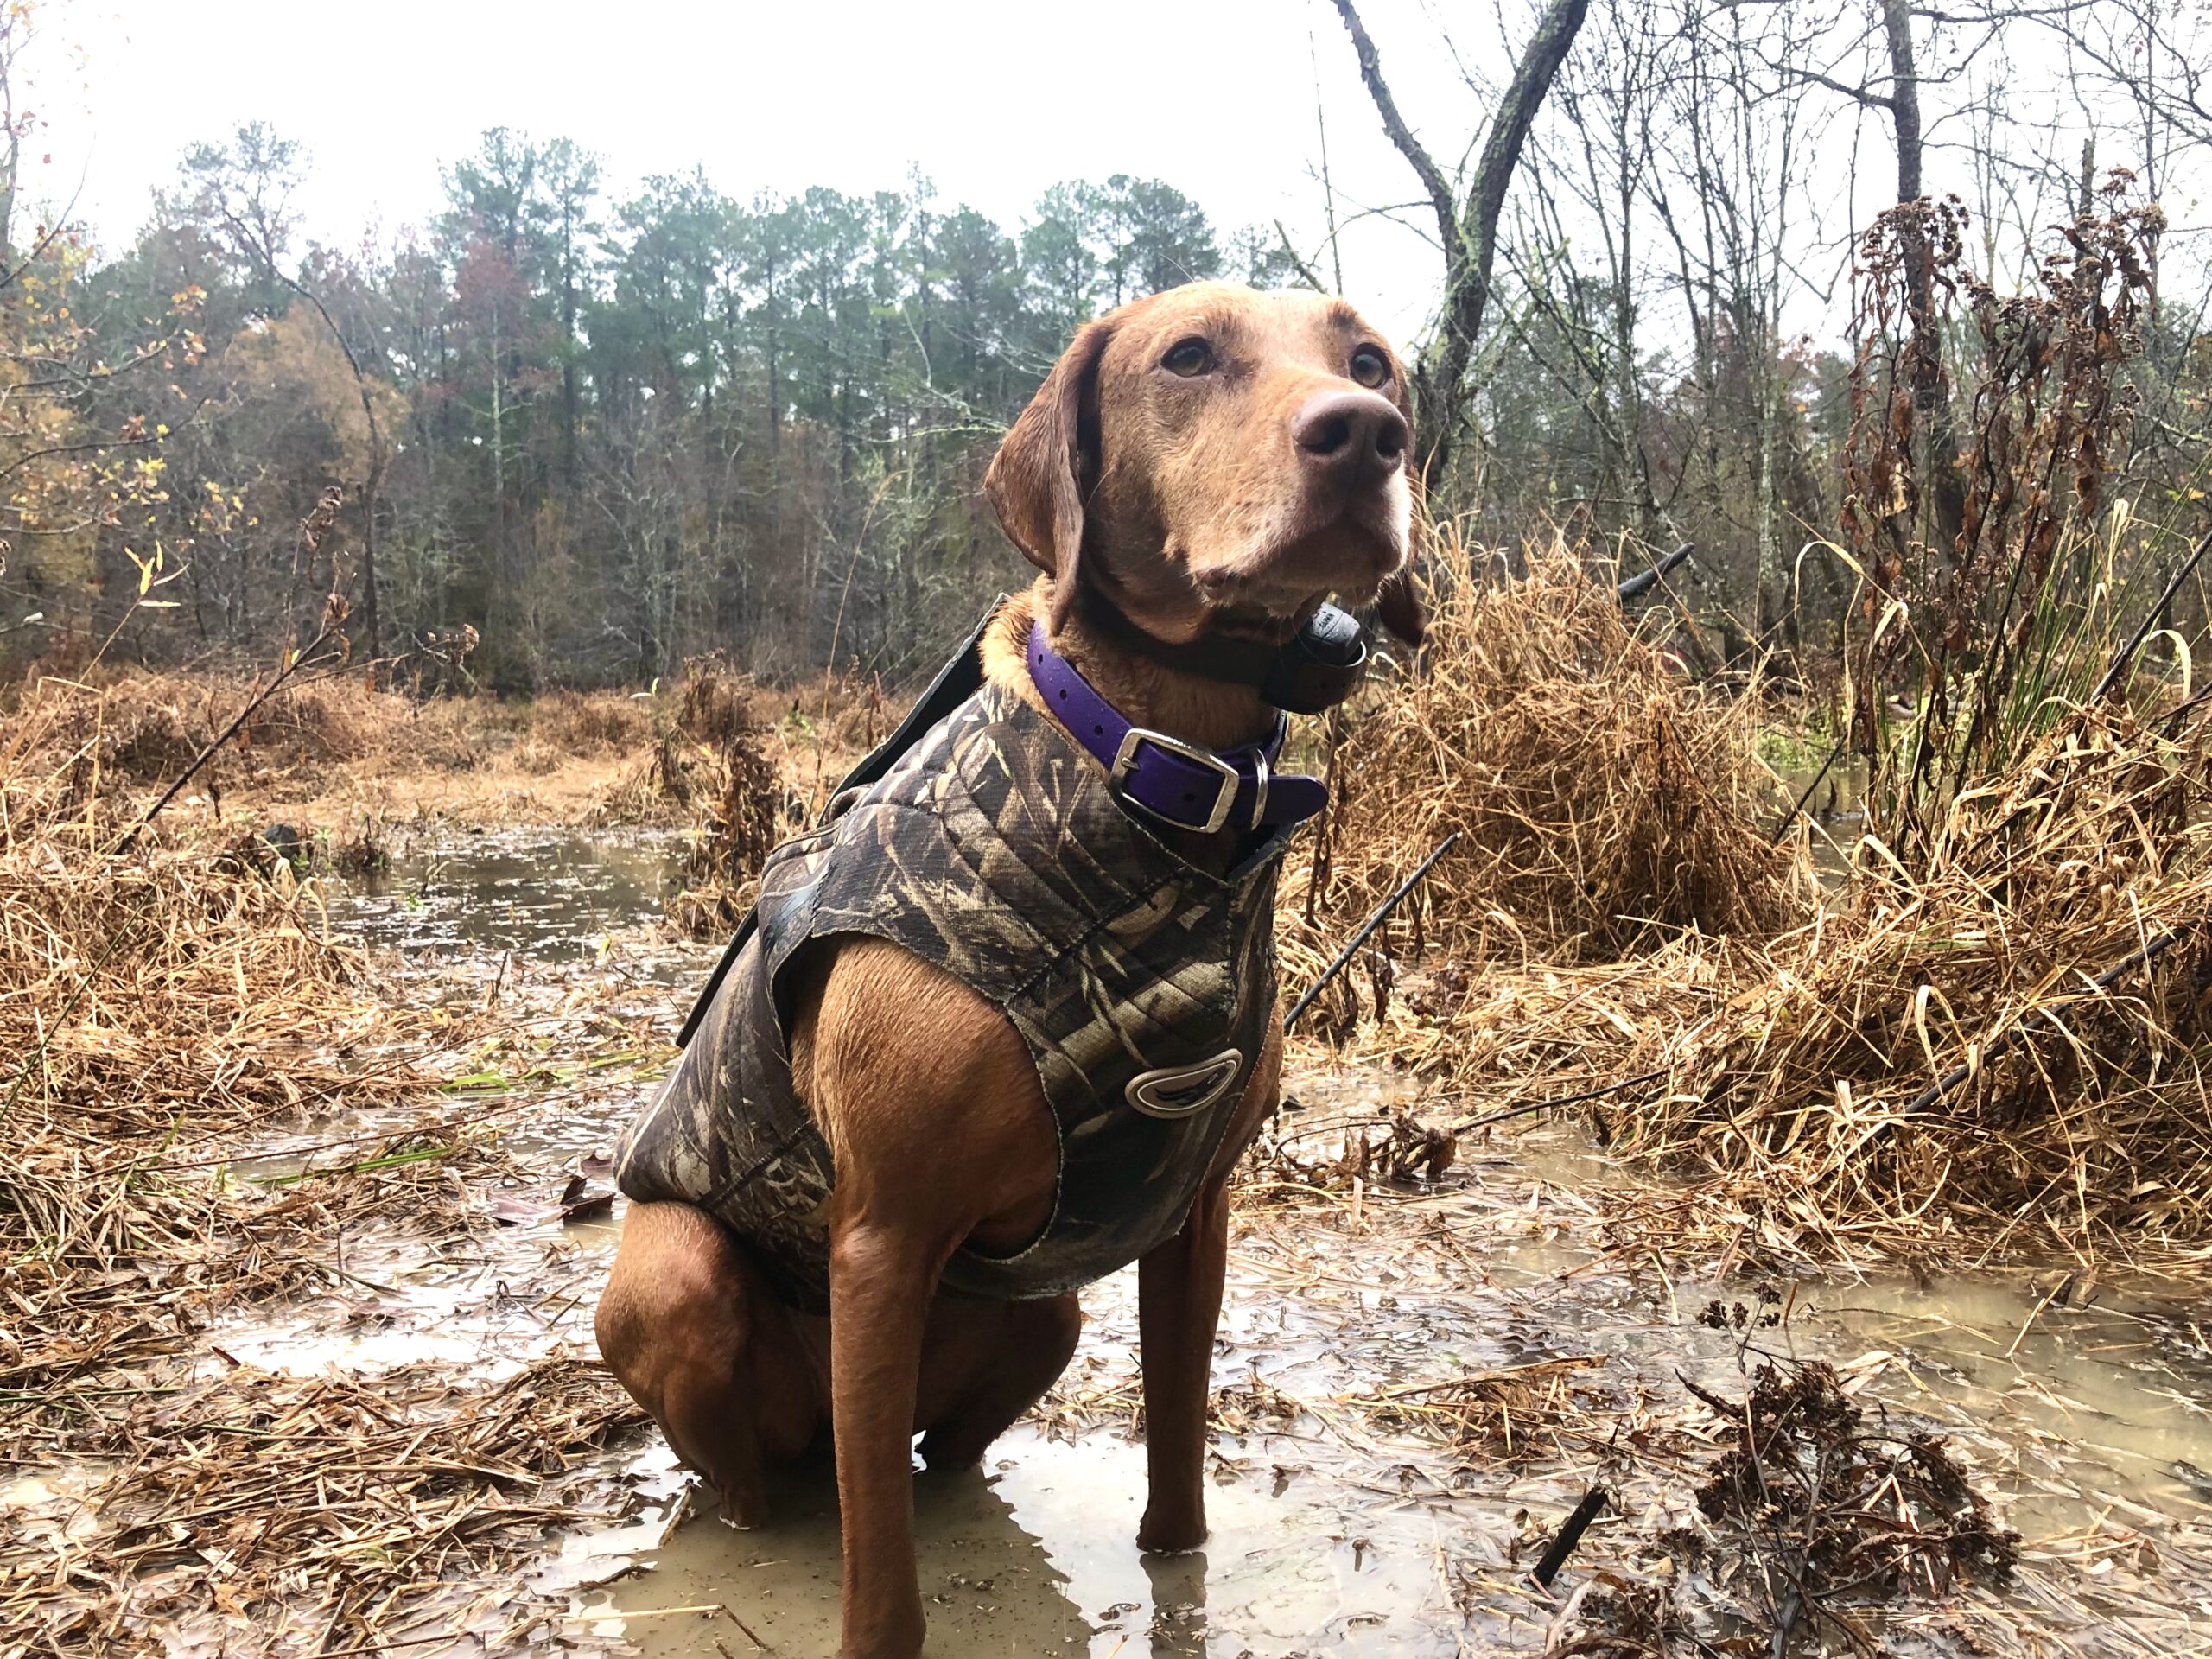 Zara wears a duck hunting vest